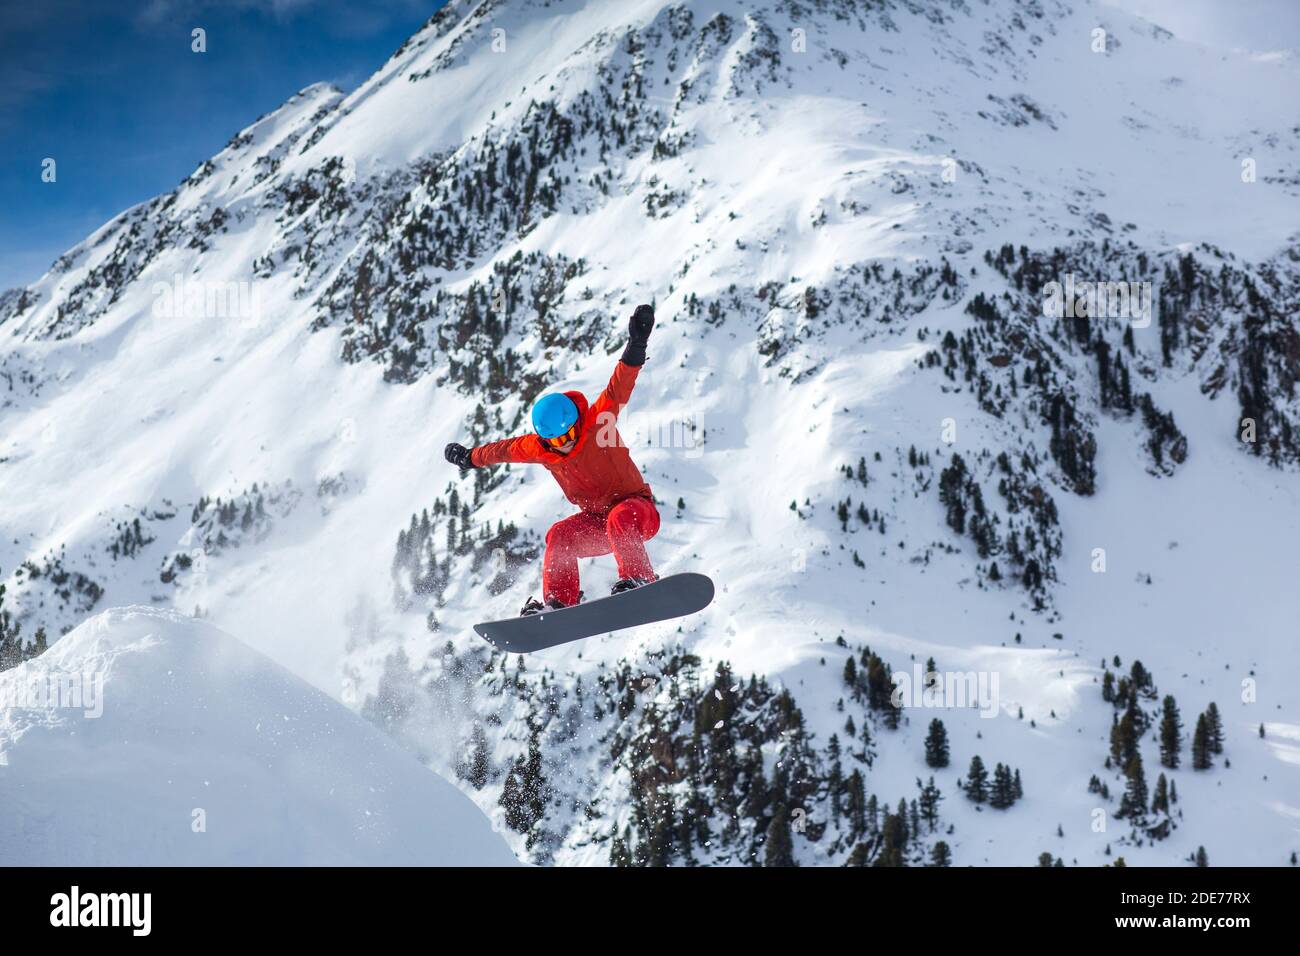 Österreich, Stubaier Alpen, Sellrain, Kühtai, Snowboarder beim sprung abseits der piste Foto Stock